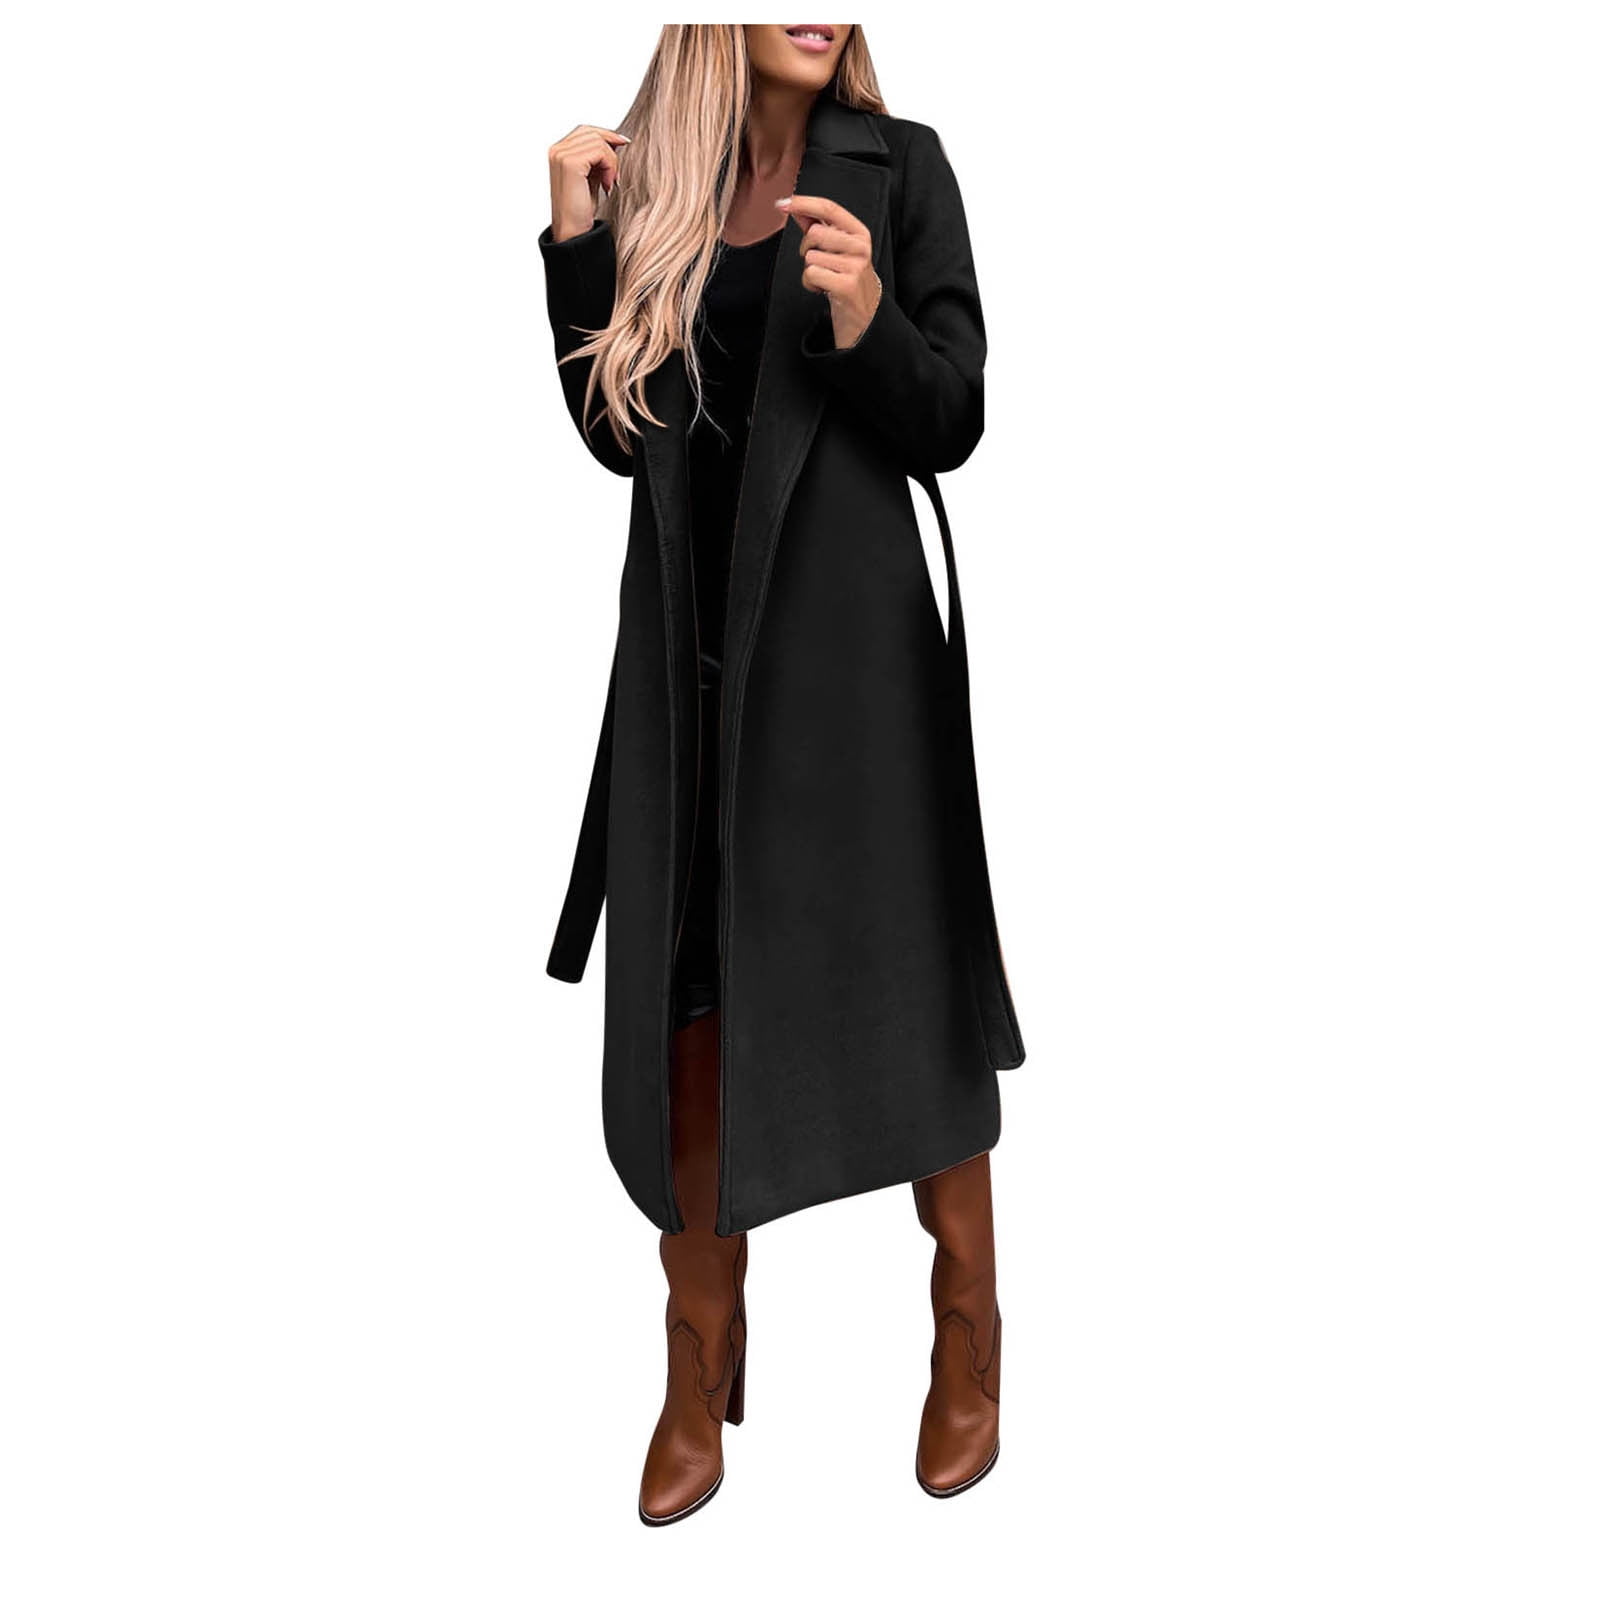 MRULIC coat for women Women's Wool Thin Coat Trench Jacket Ladies Slim Long  Overcoat Outwear Women's Jackets Coats Khaki + S